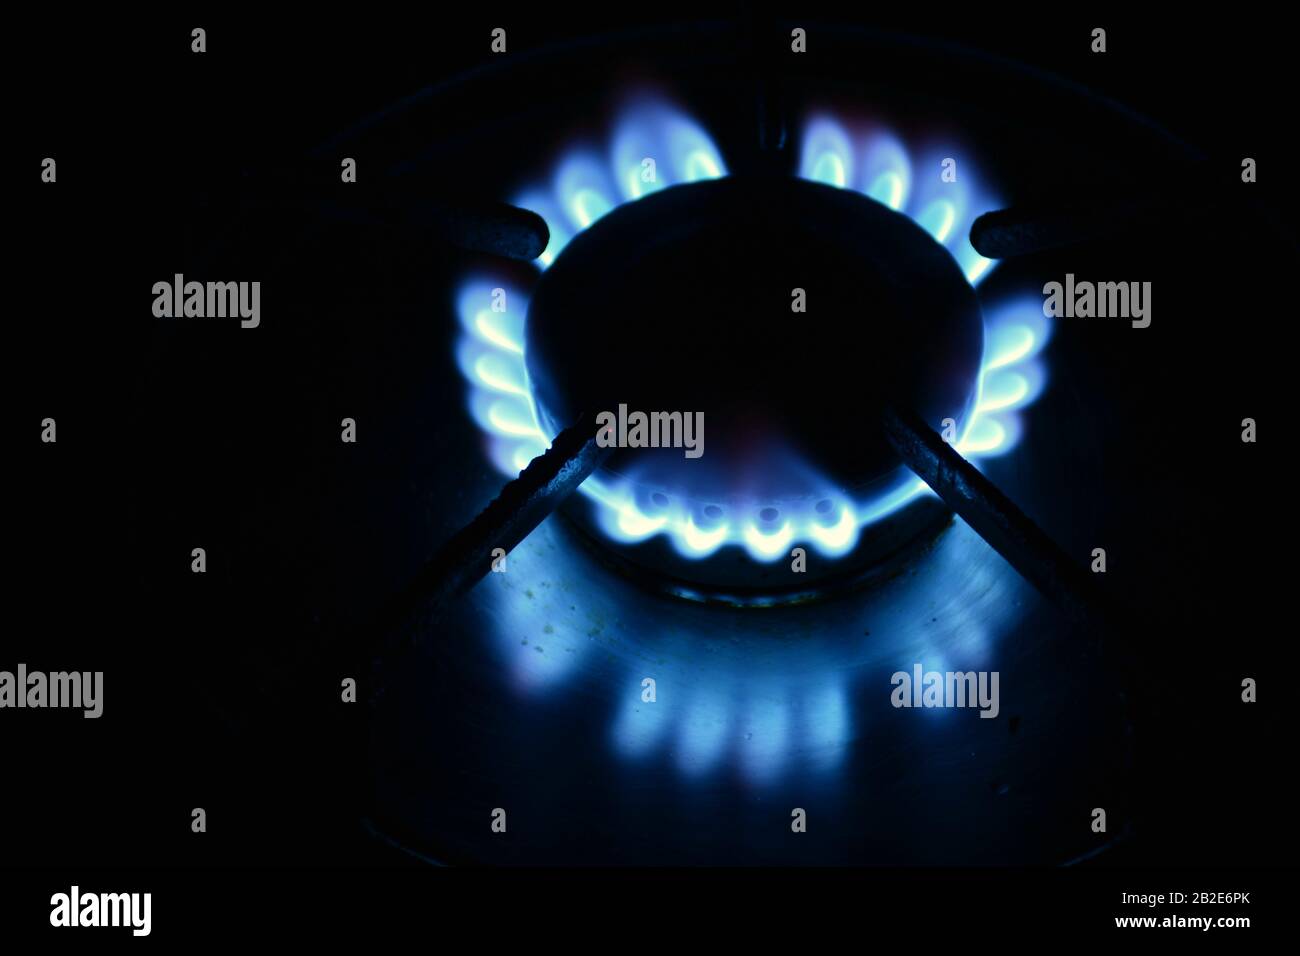 Varios quemadores encendidos en la oscuridad con llama de un quemador de gas butano Stock Photo